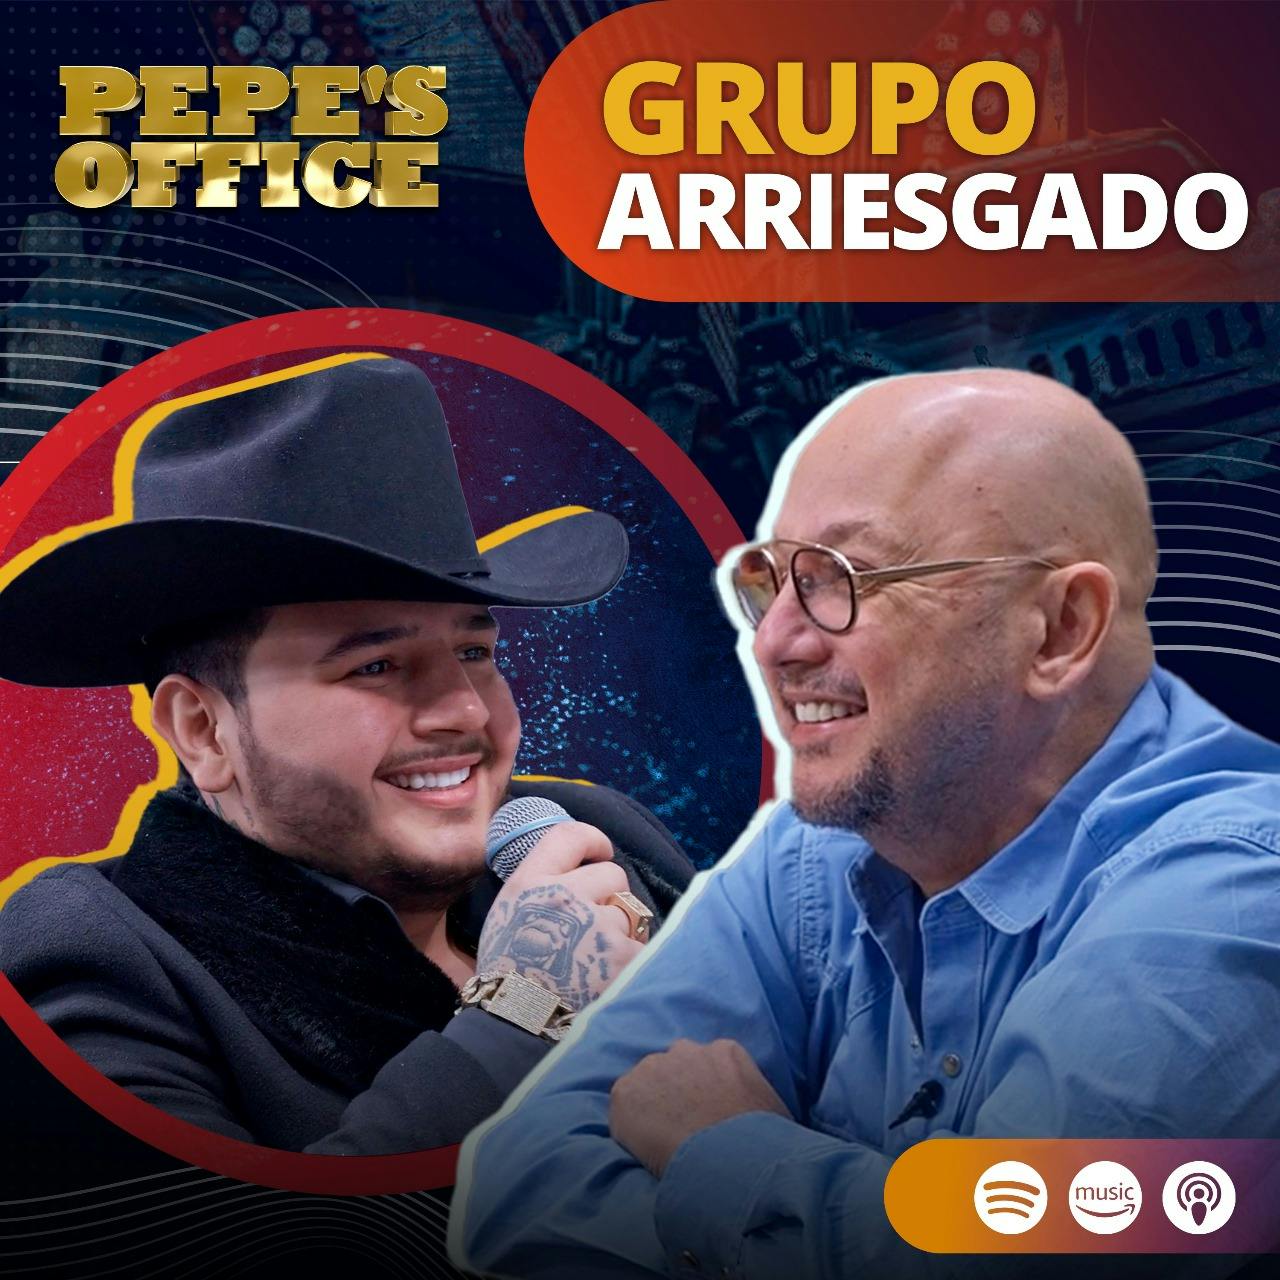 GRUPO ARRIESGADO: REGRESA A SUS INICIOS EN ESTÁ NUEVA ETAPA | Pepe's Office